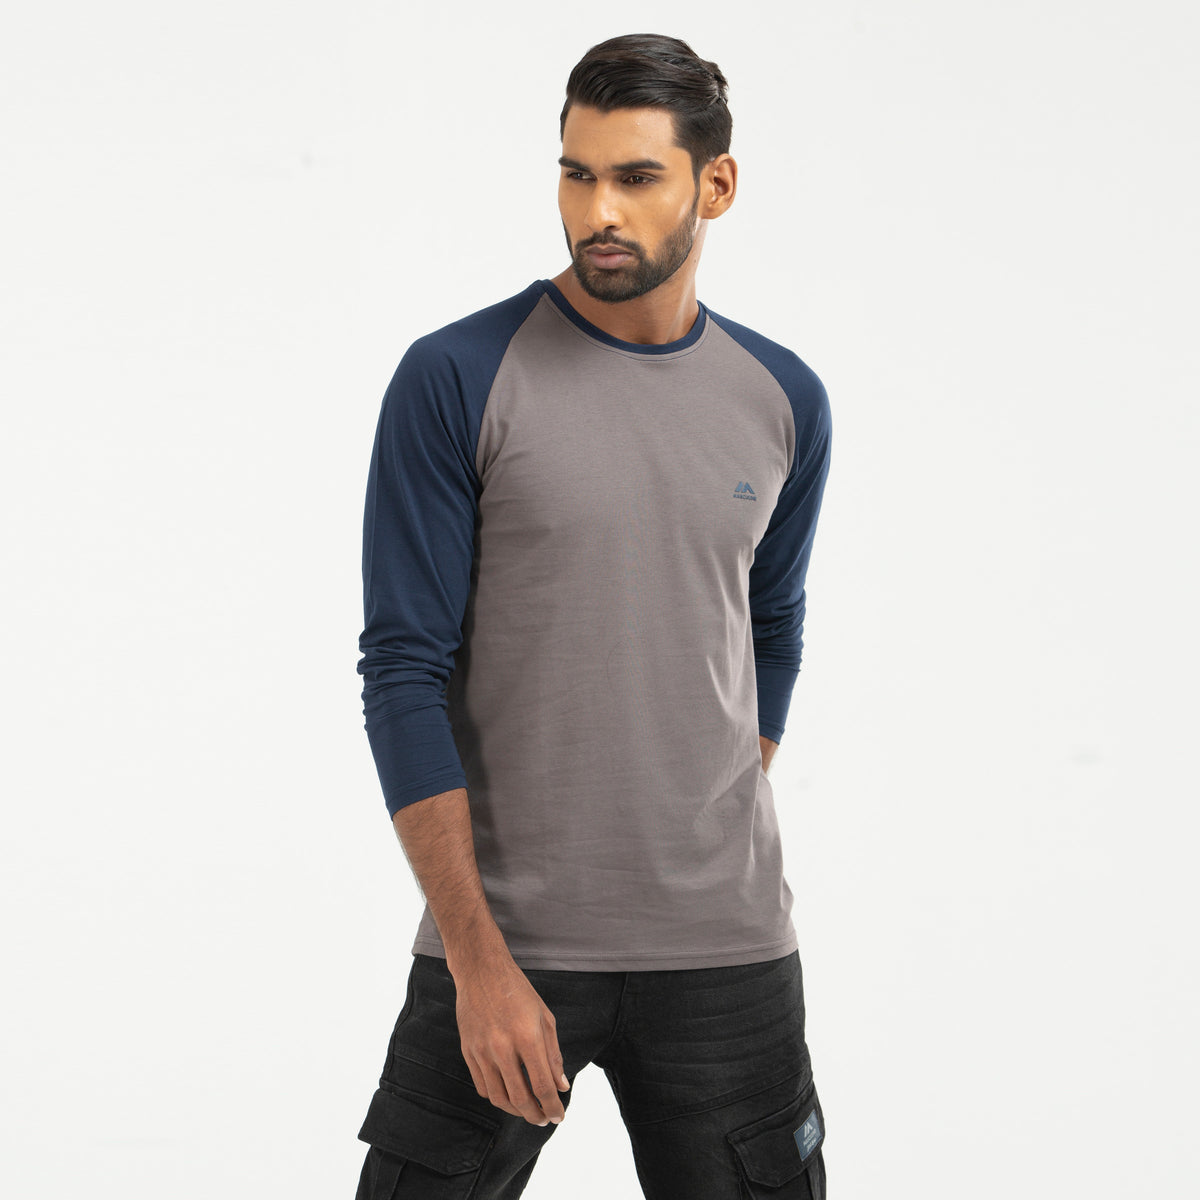 Raglan Long Sleeve T-shirt - charcoal & navy